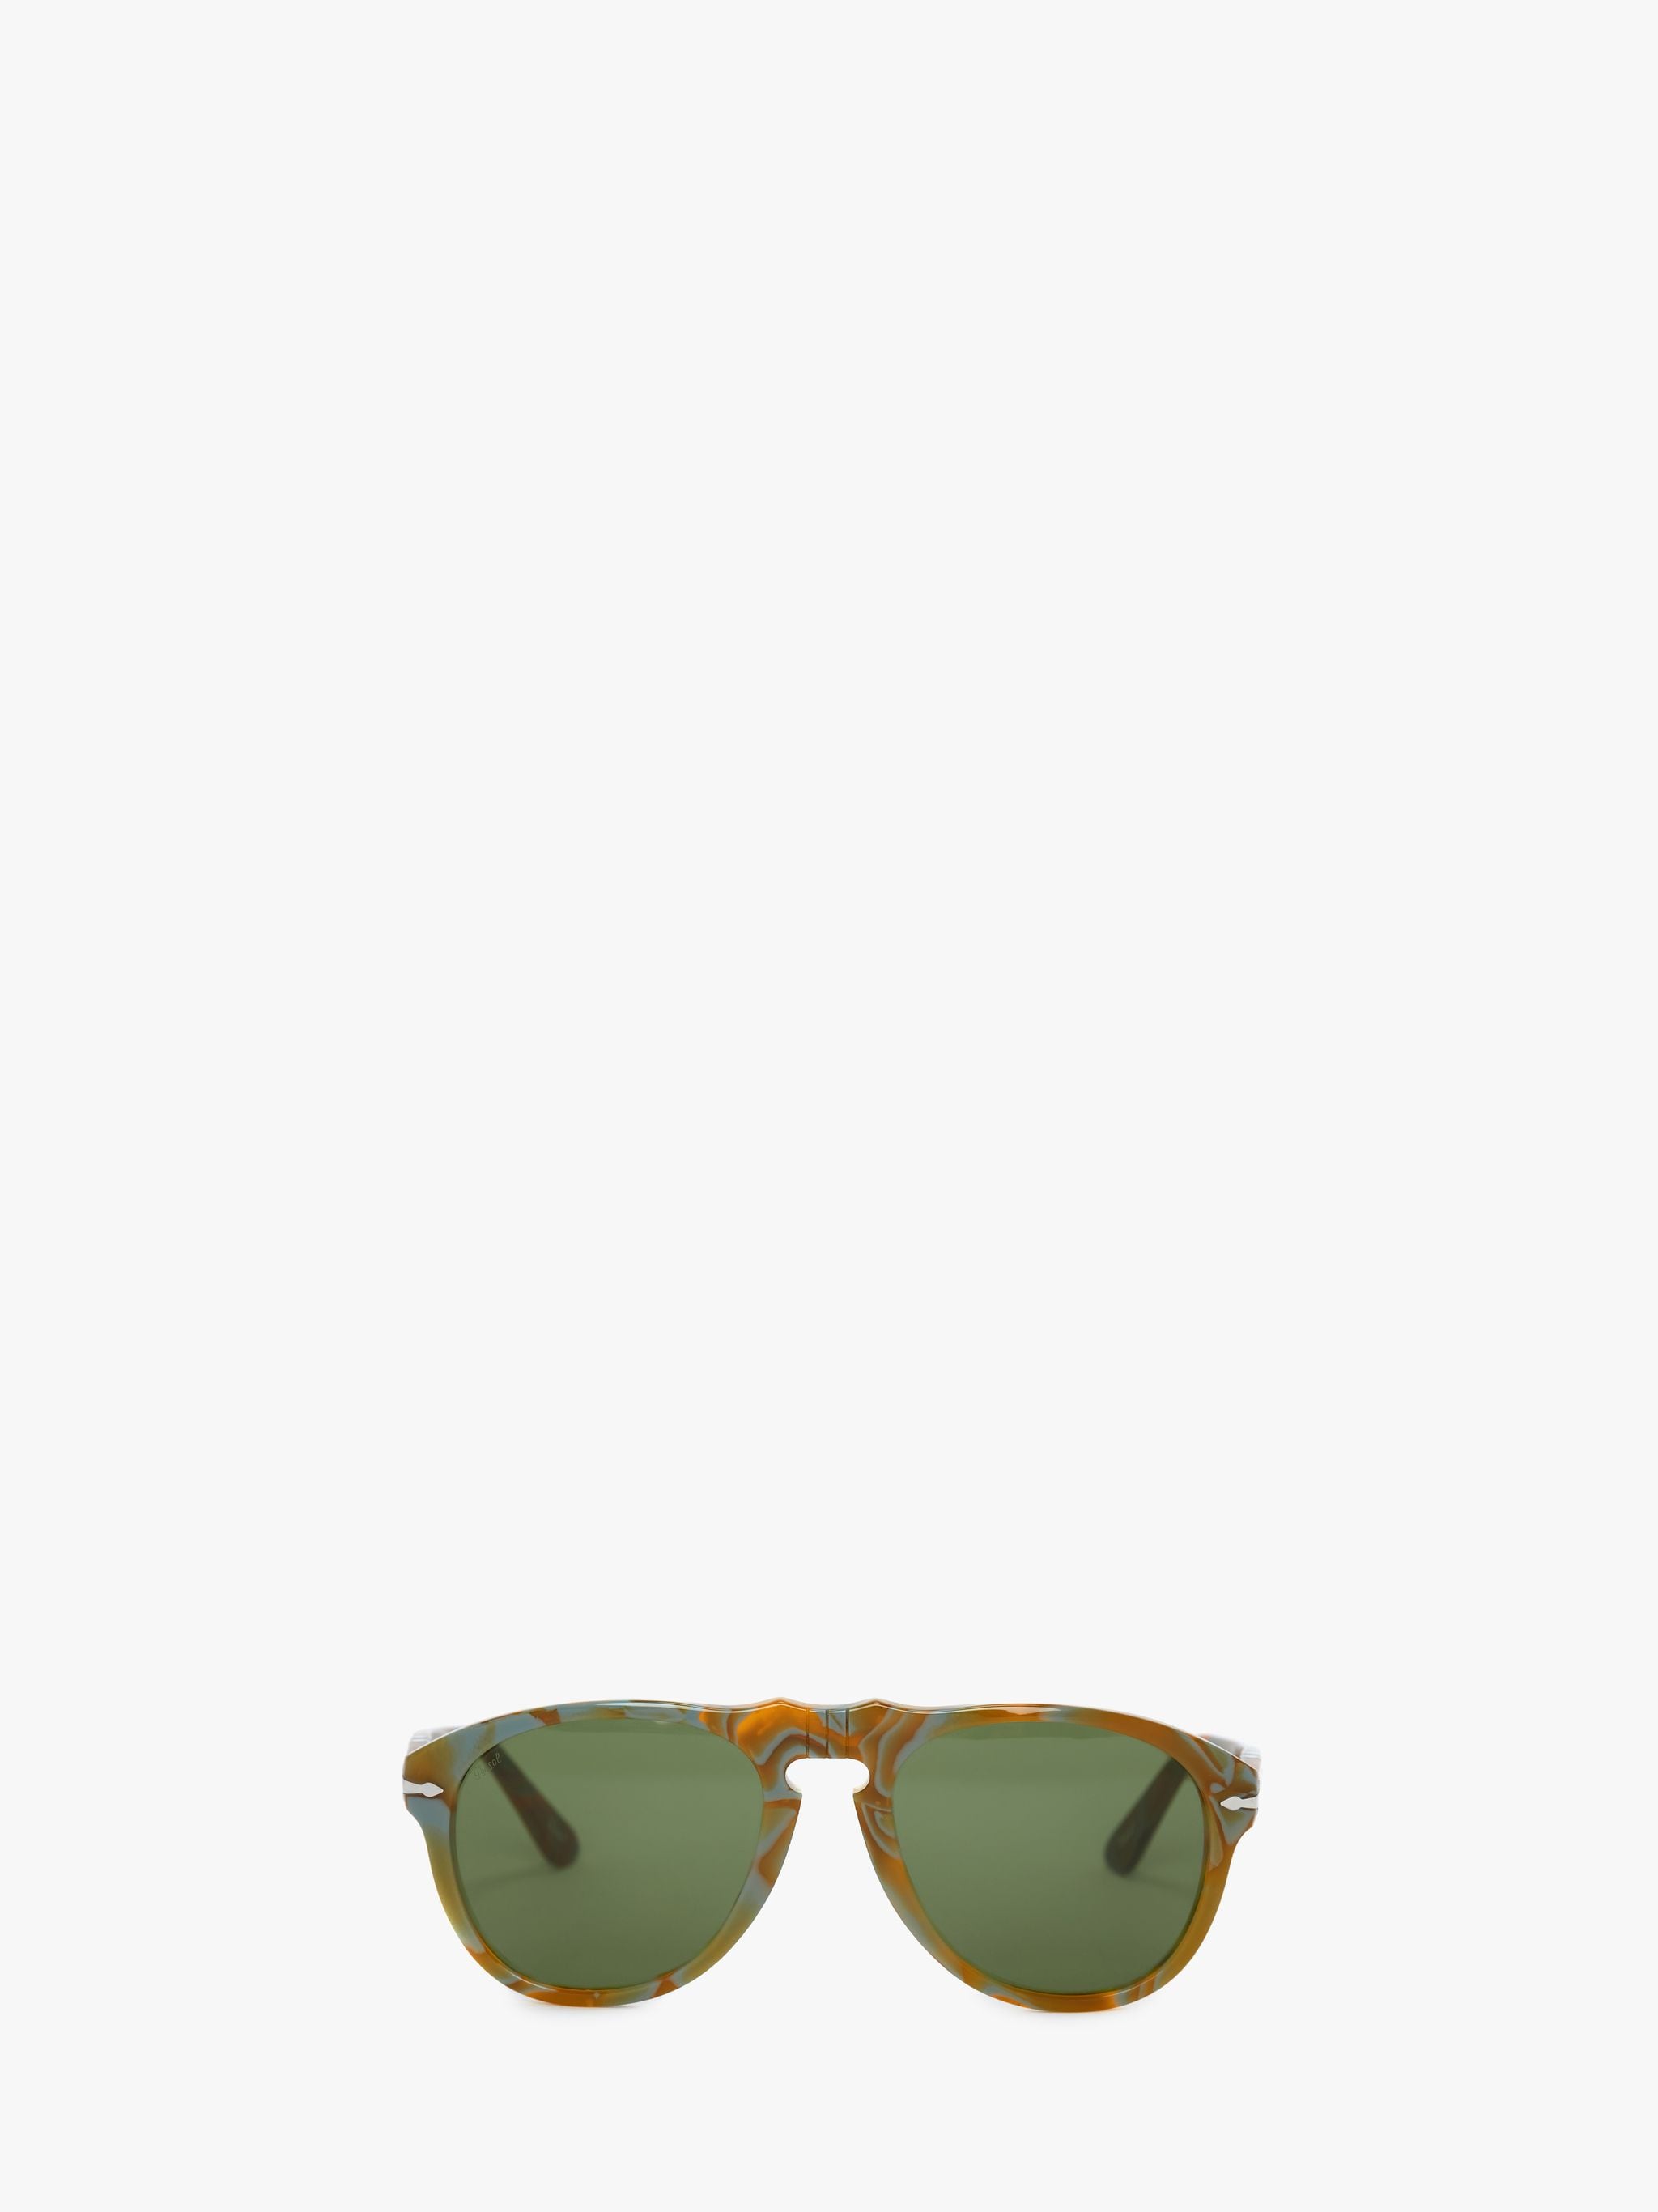 Солнцезащитные очки - авиатор JW Anderson, зеленый солнцезащитные очки invu авиаторы оправа металл градиентные для женщин голубой